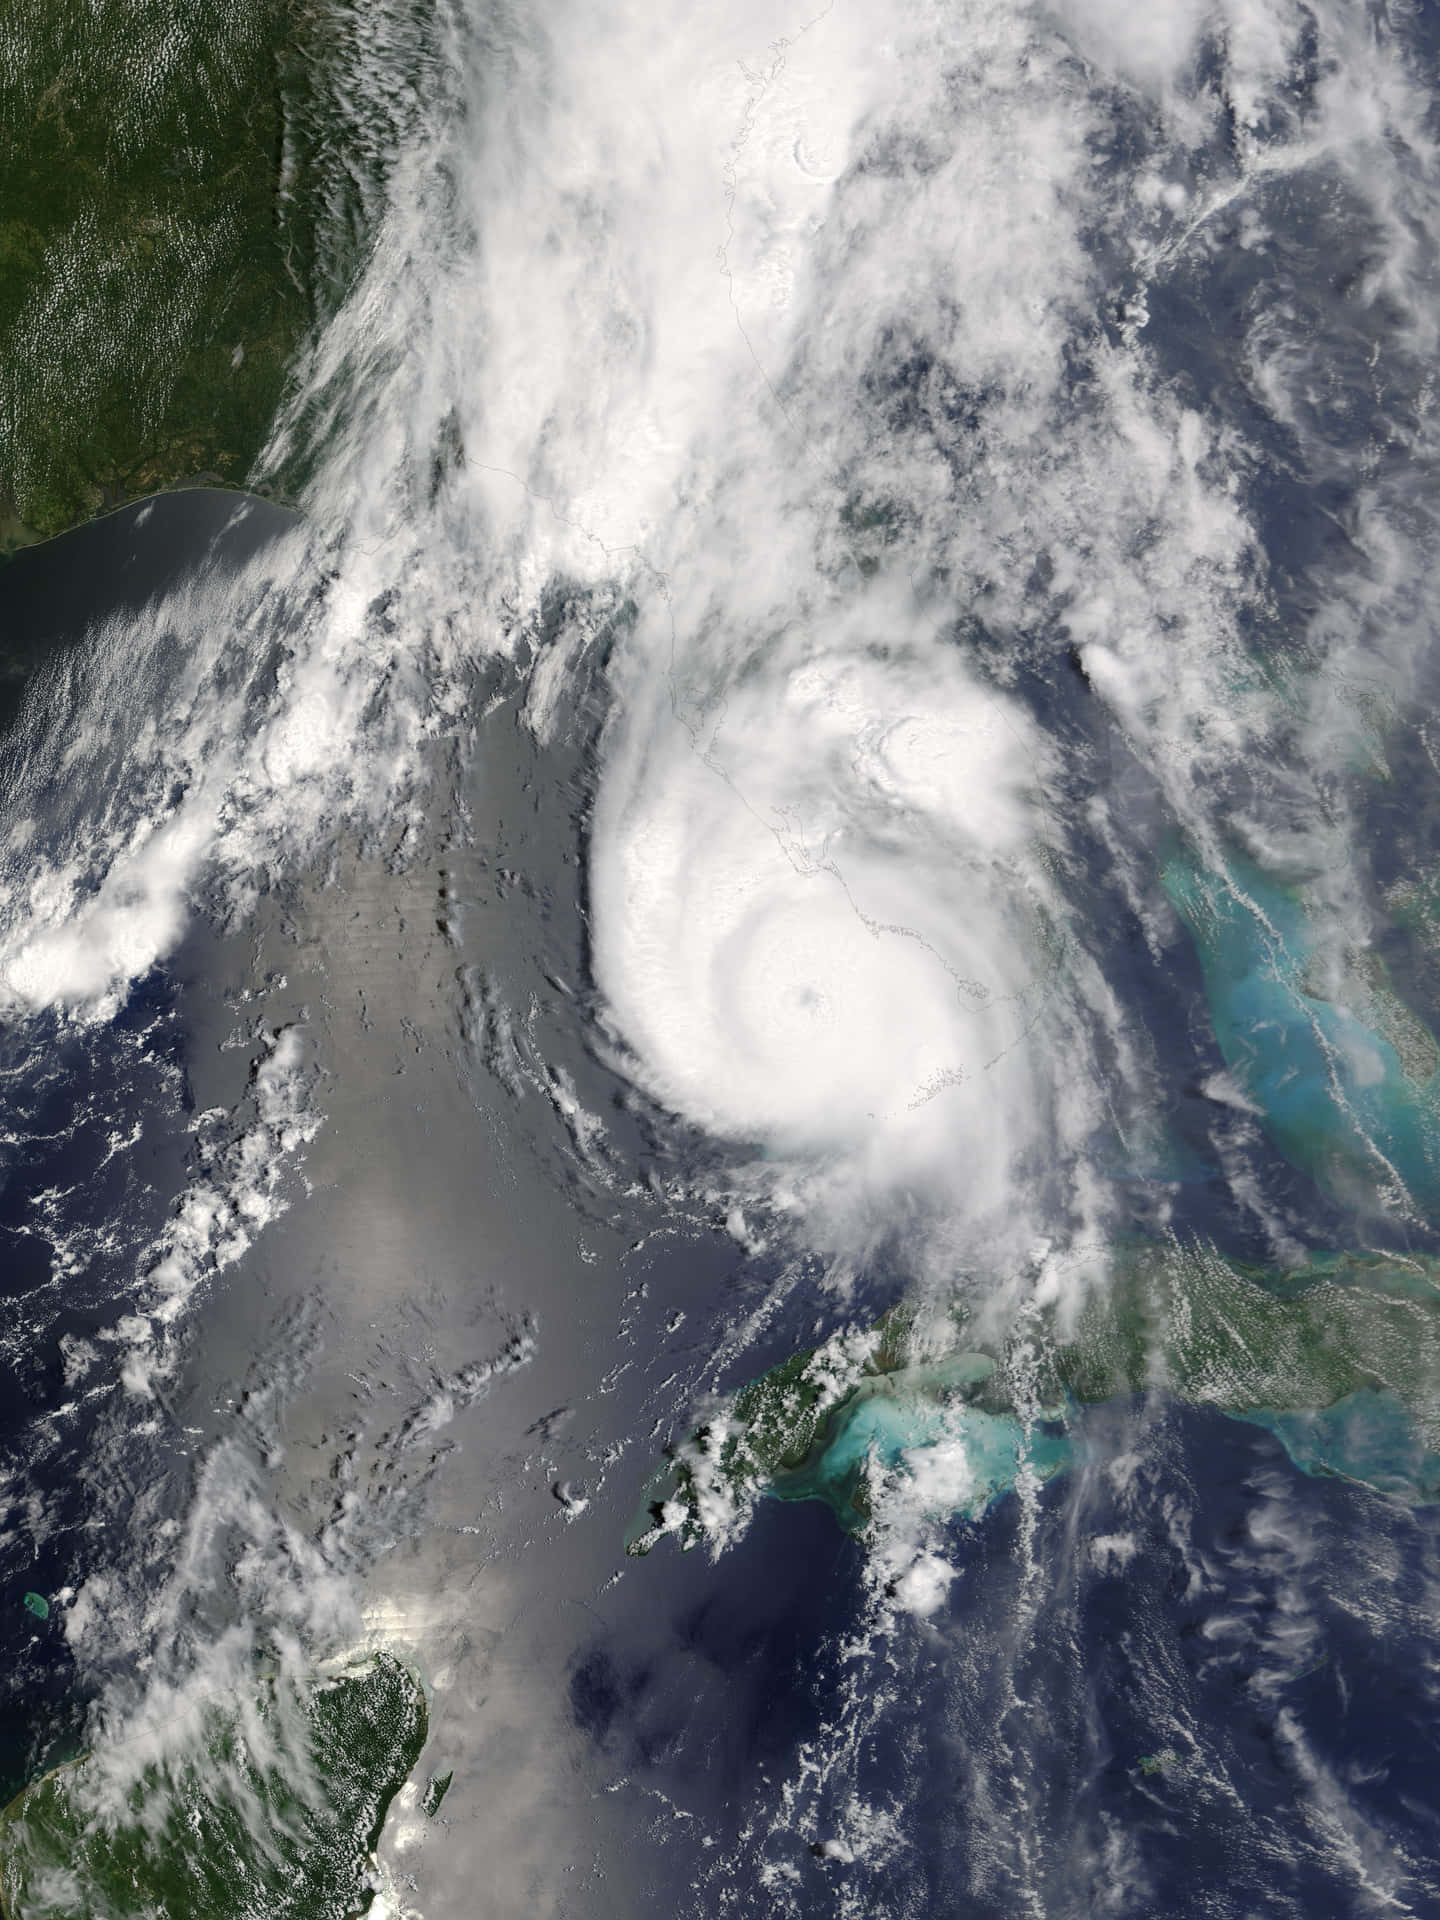 Mitder Zerstörerischen Kraft Eines Hurrikans Konfrontiert